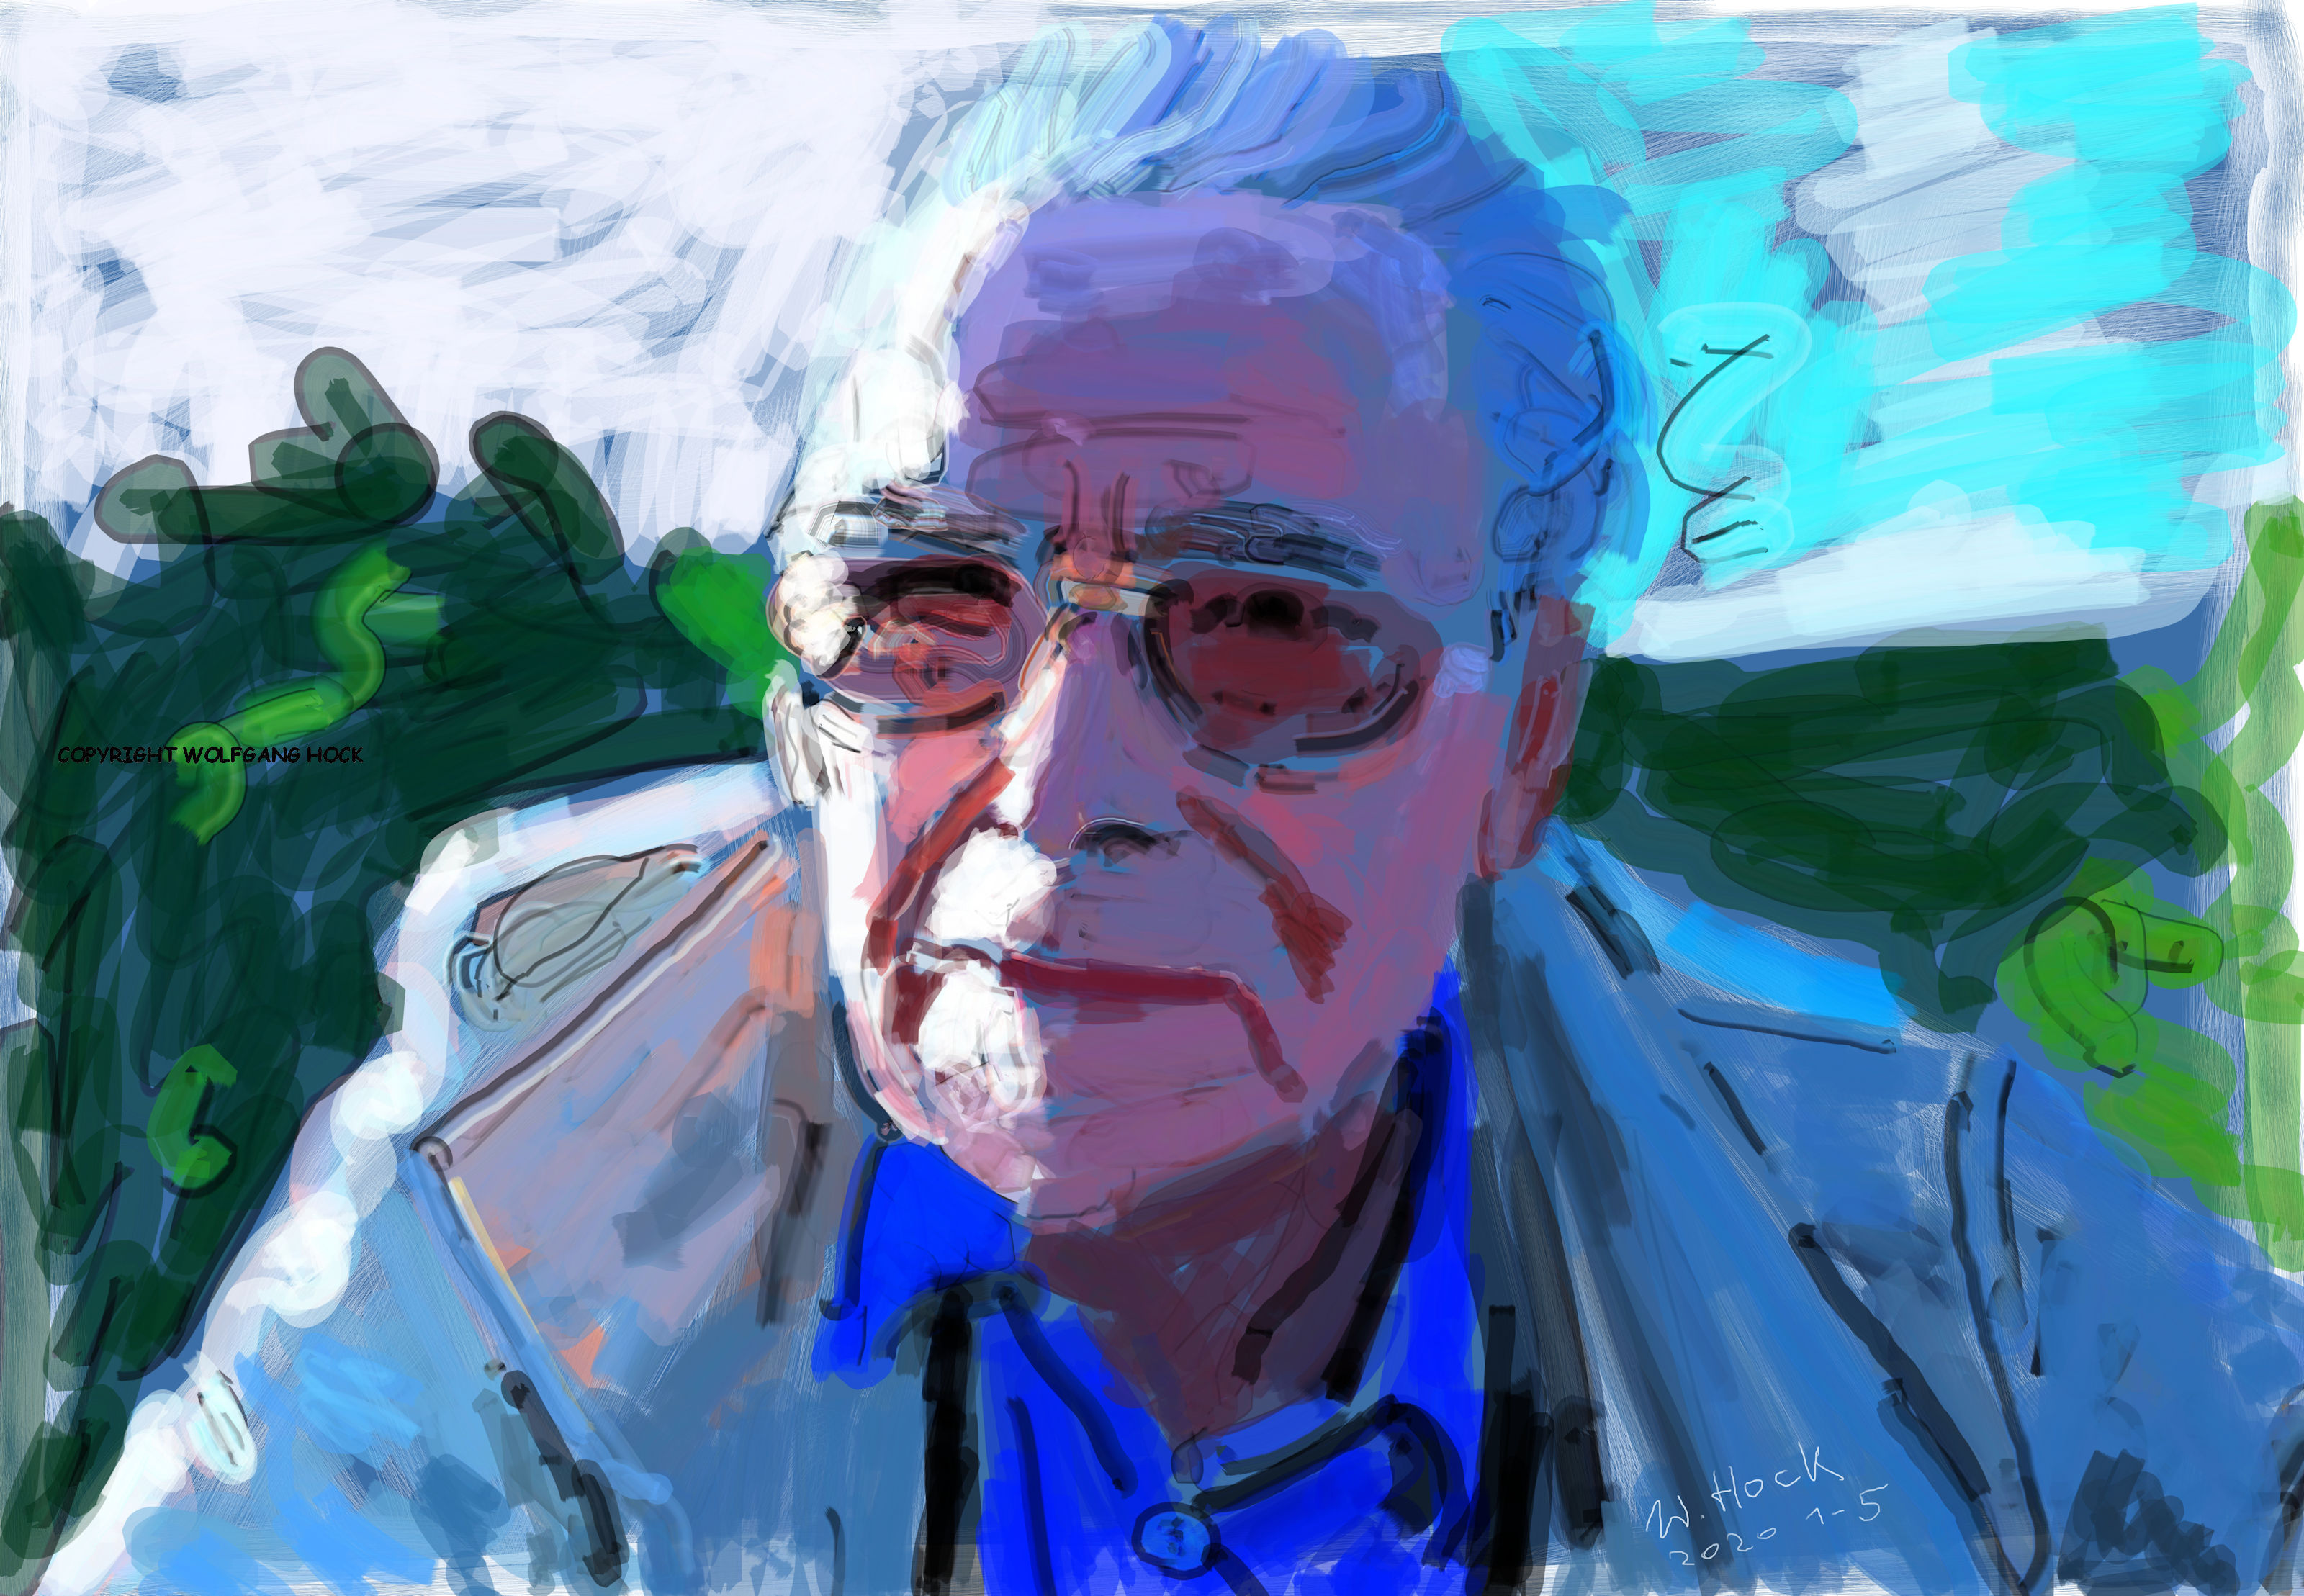 Portrait meines Vaters - My father's portrait - Retrato do meu pai 2020   Handmade digital painting on canvas 160 x 120 cm (186 megapixels)